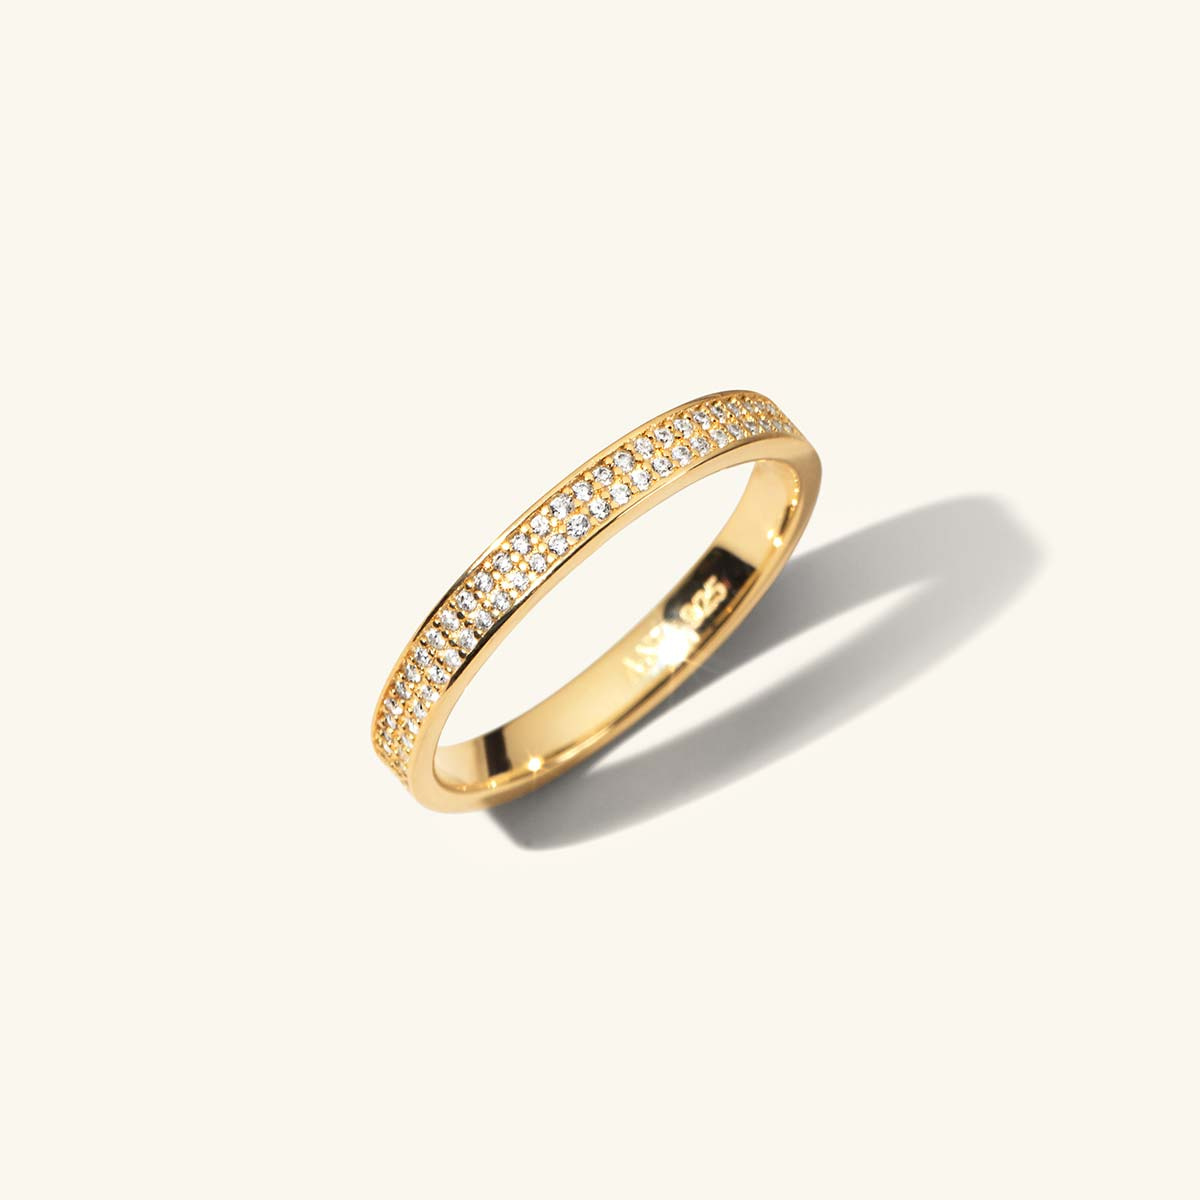 Flat shape Wedding Ring in 18K Gold 4mm wide - A Jewel